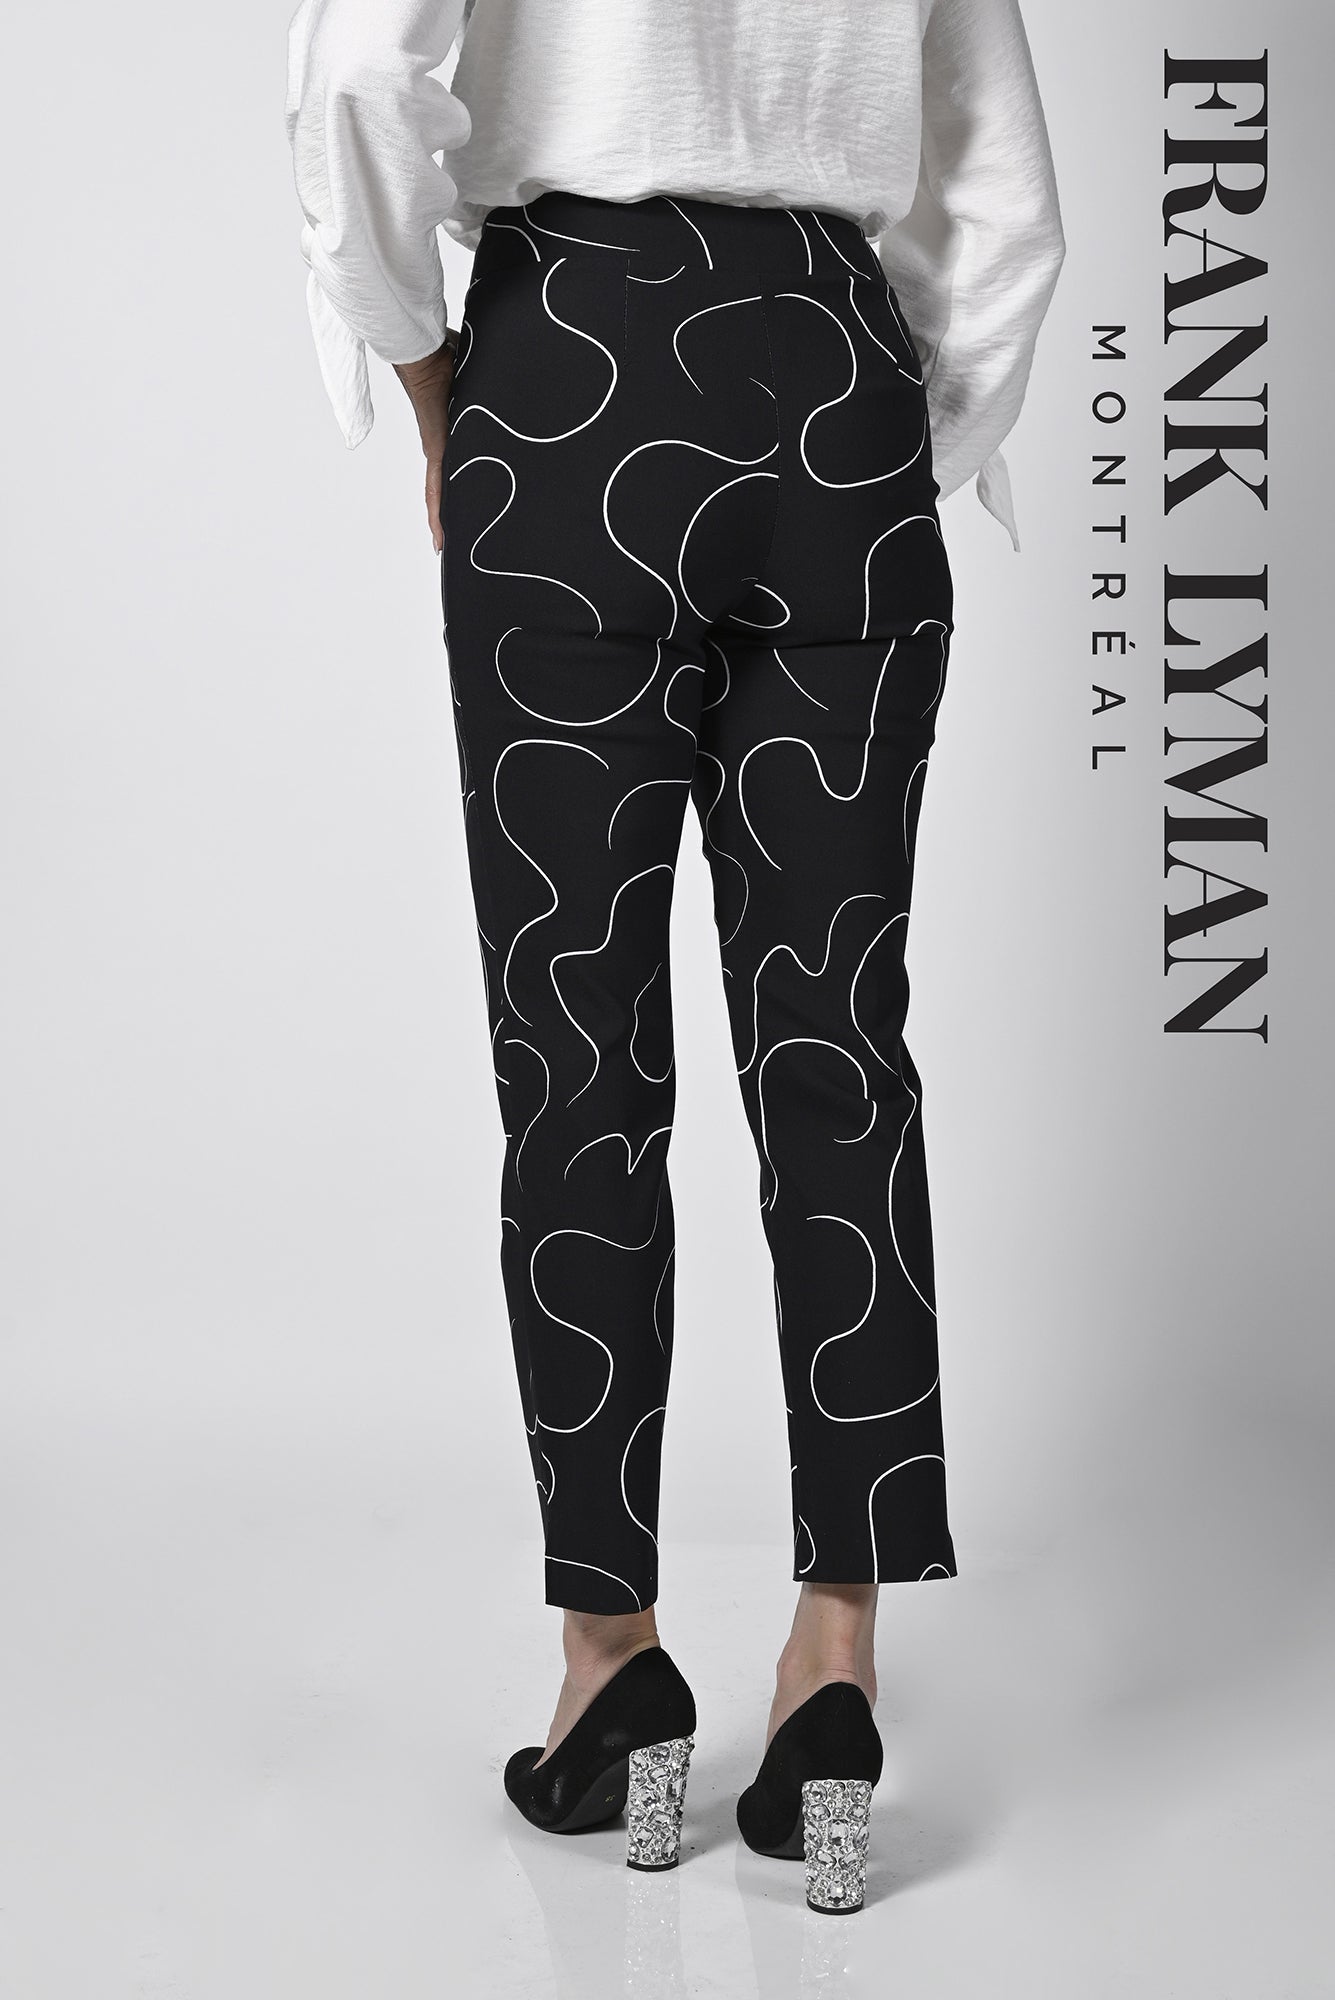 Pantalon cheville pour femme par Frank Lyman | 236295 BLK/WHT | Boutique Vvög, vêtements mode pour homme et femme